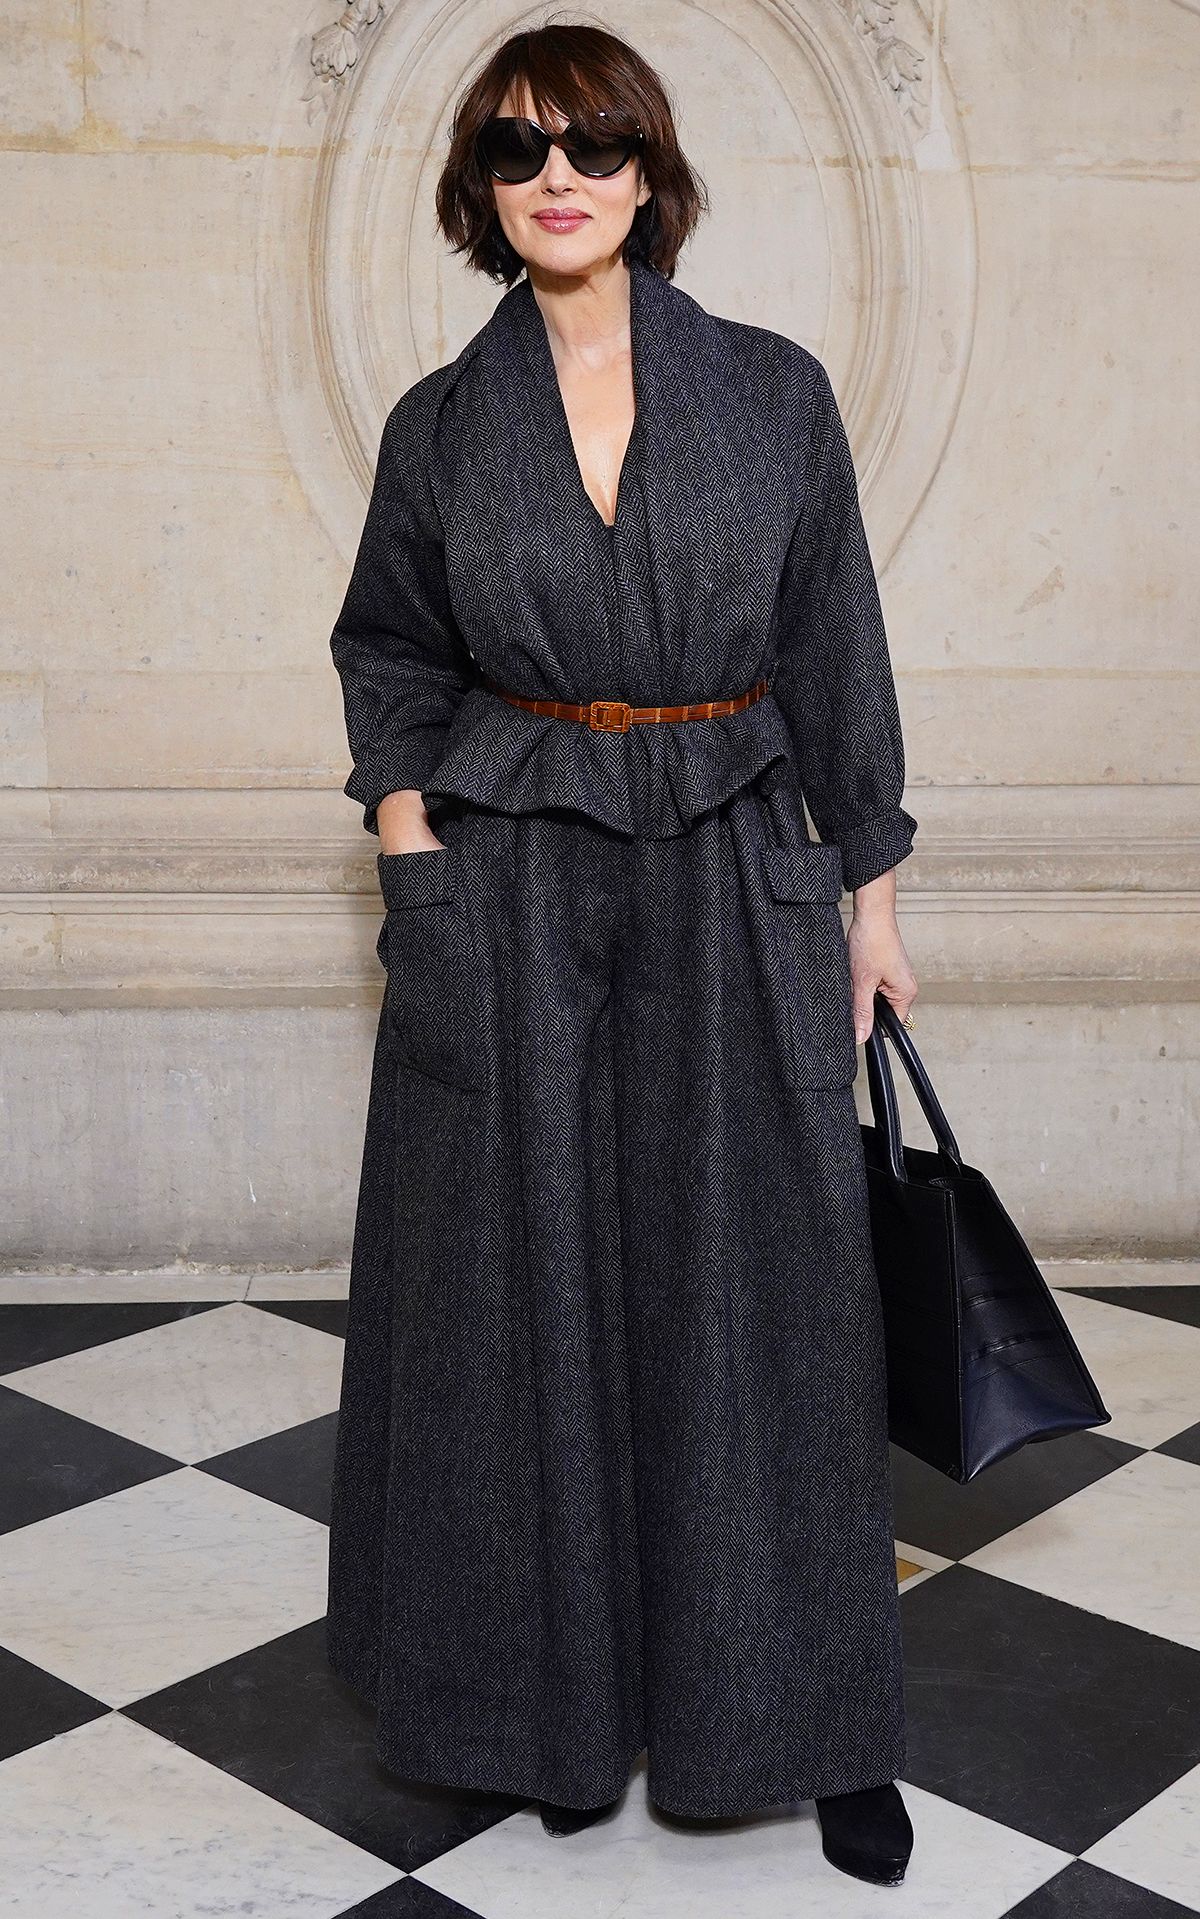 Моника Беллуччи на шоу Dior Haute Couture